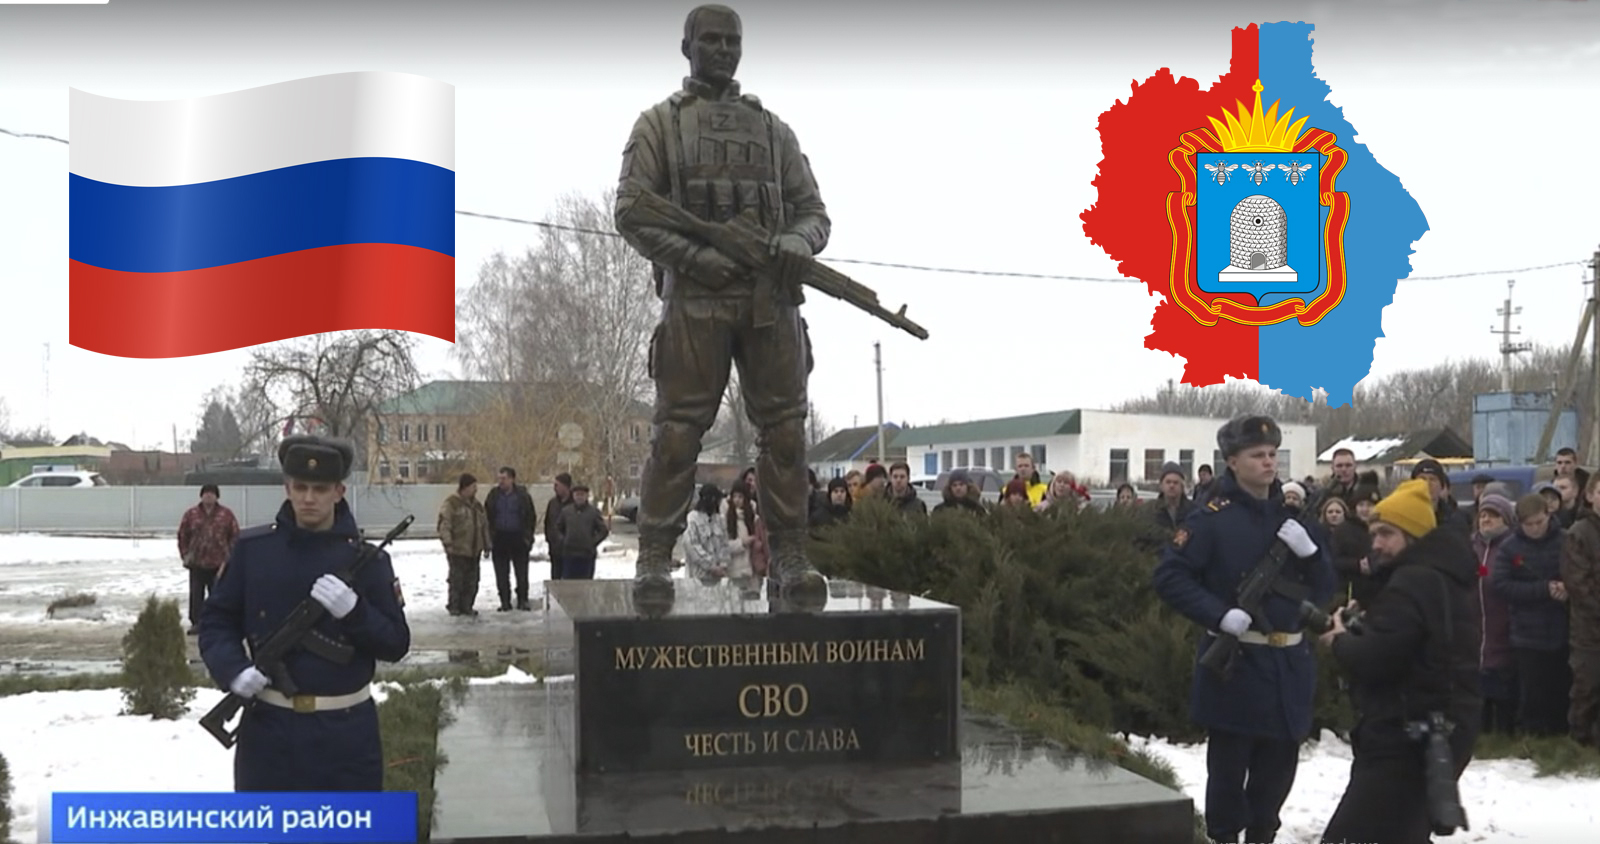 Вы сейчас просматриваете В Тамбовской области открыли памятник героям СВО